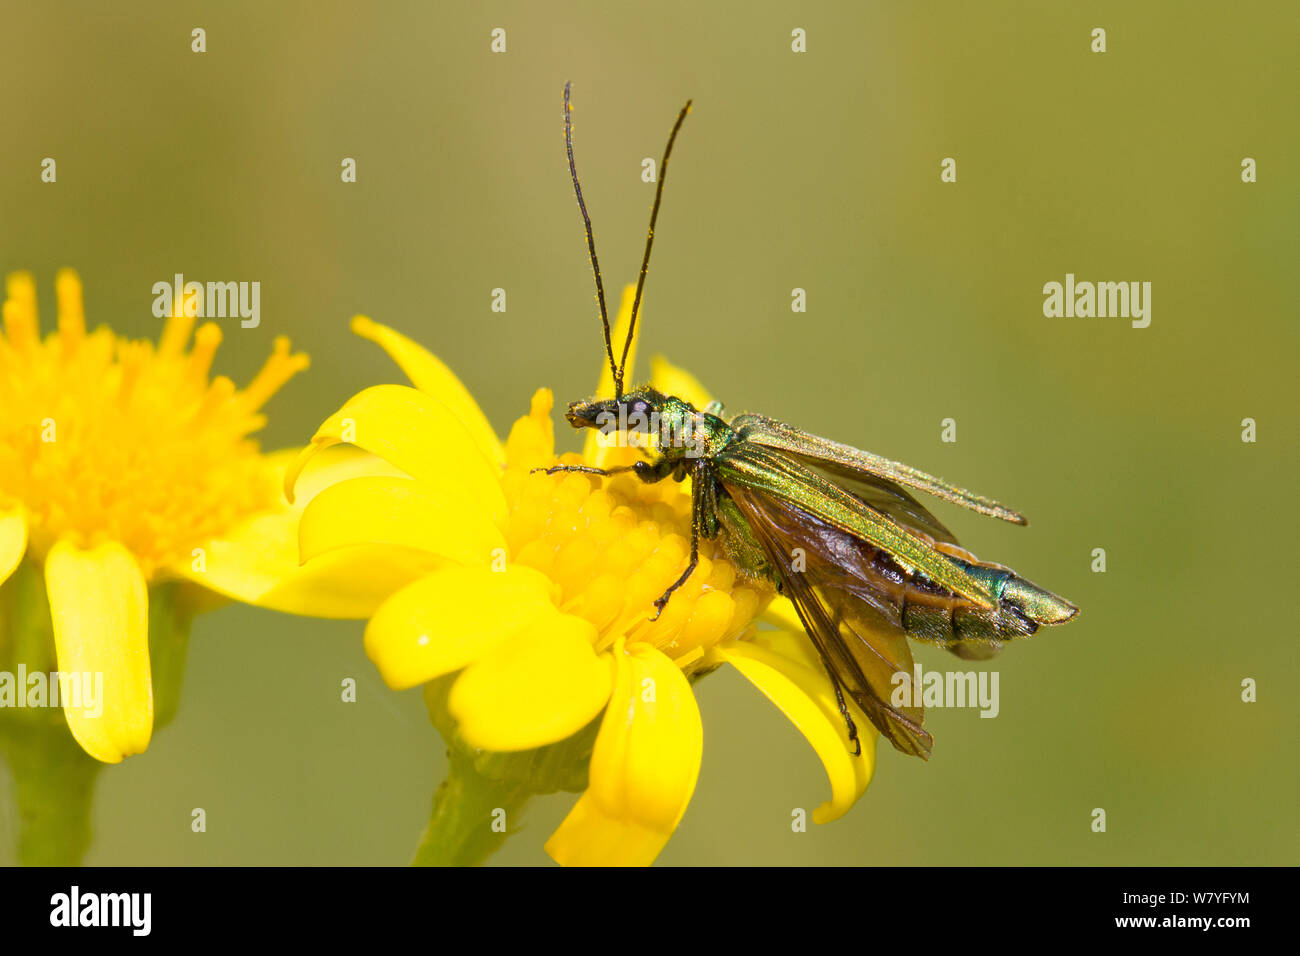 Spessore femmina-impastare il fiore beetle (Oedemera nobilis) in fase di riscaldamento sulla comune erba tossica, Brockley cimitero, Lewisham, a sud-est di Londra, Inghilterra, Regno Unito, Giugno. Foto Stock